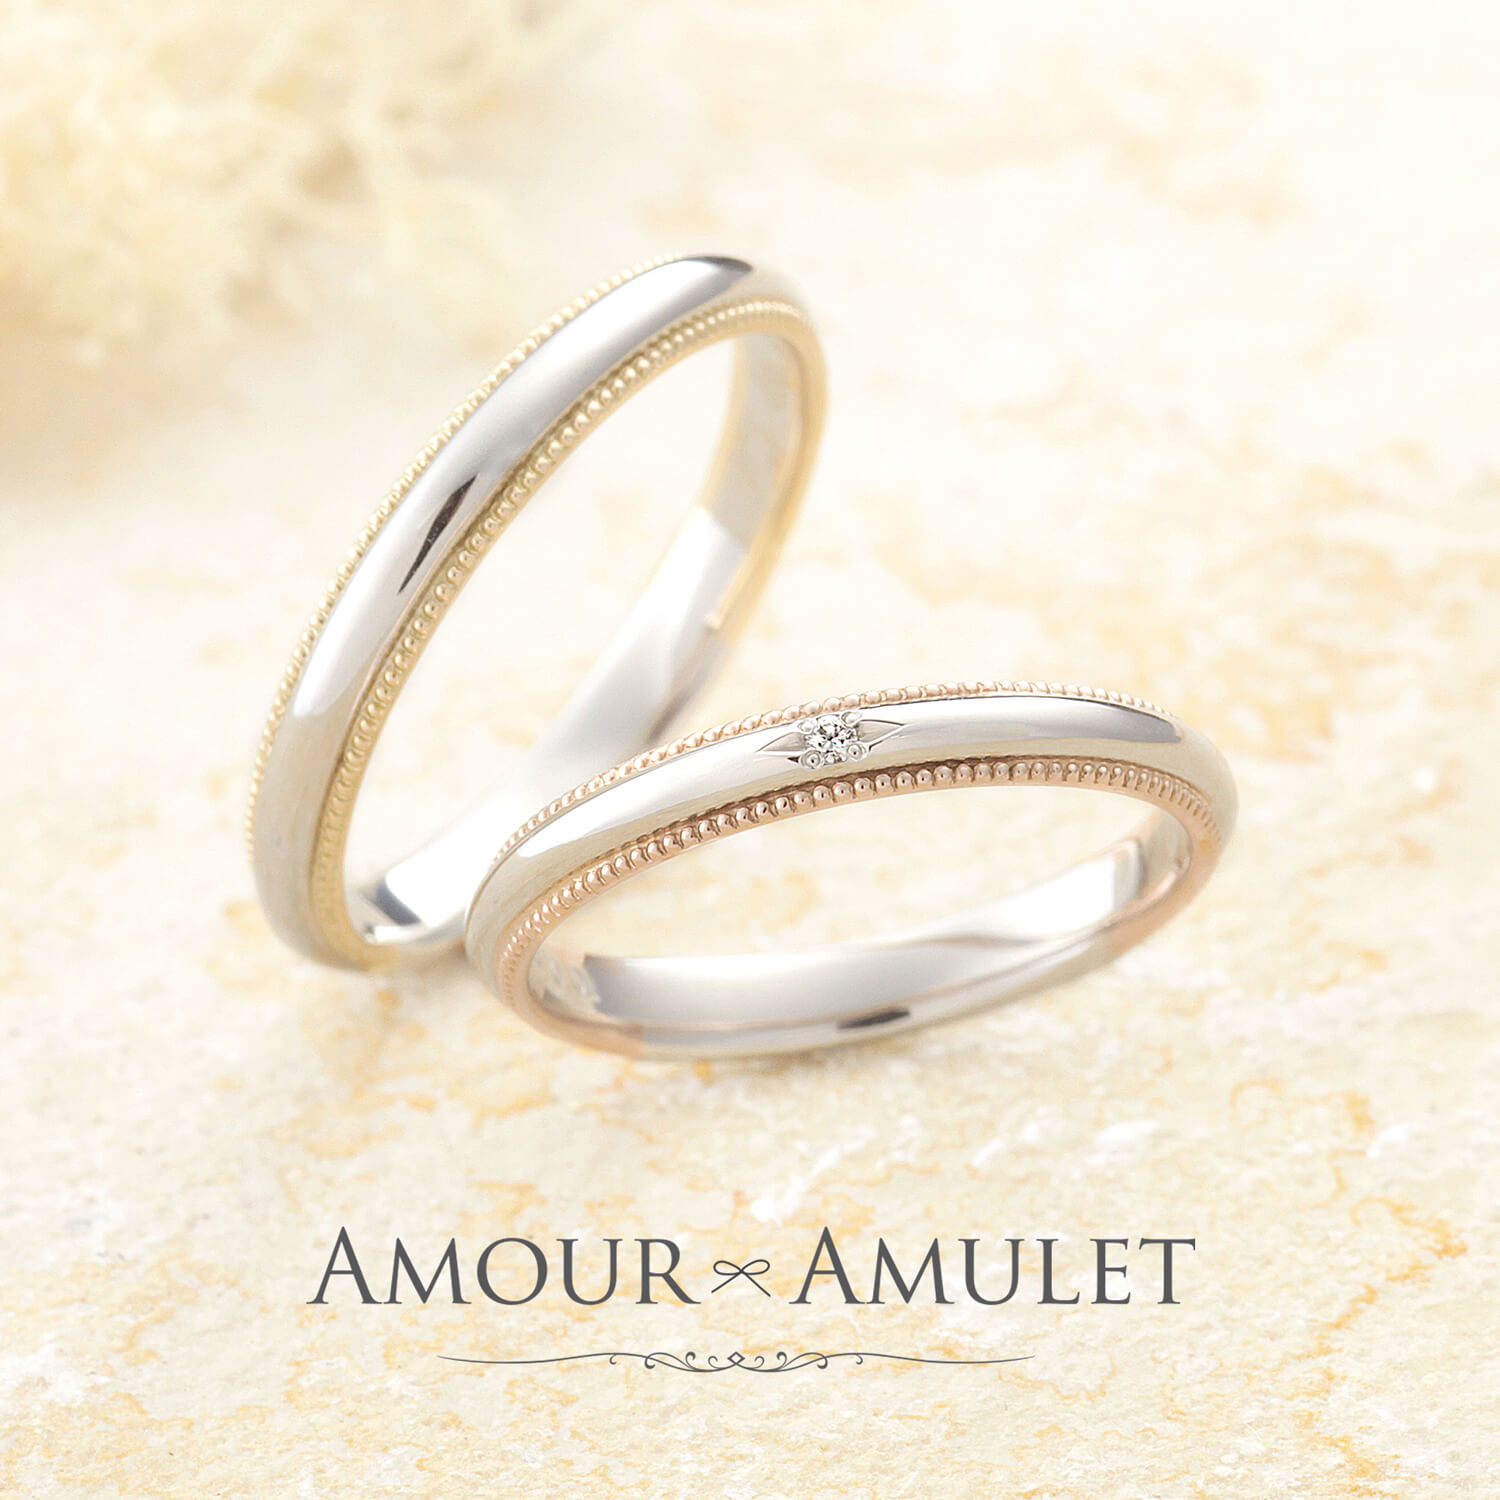 AMOURAMULETアムールアミュレットの結婚指輪FLEURフルール